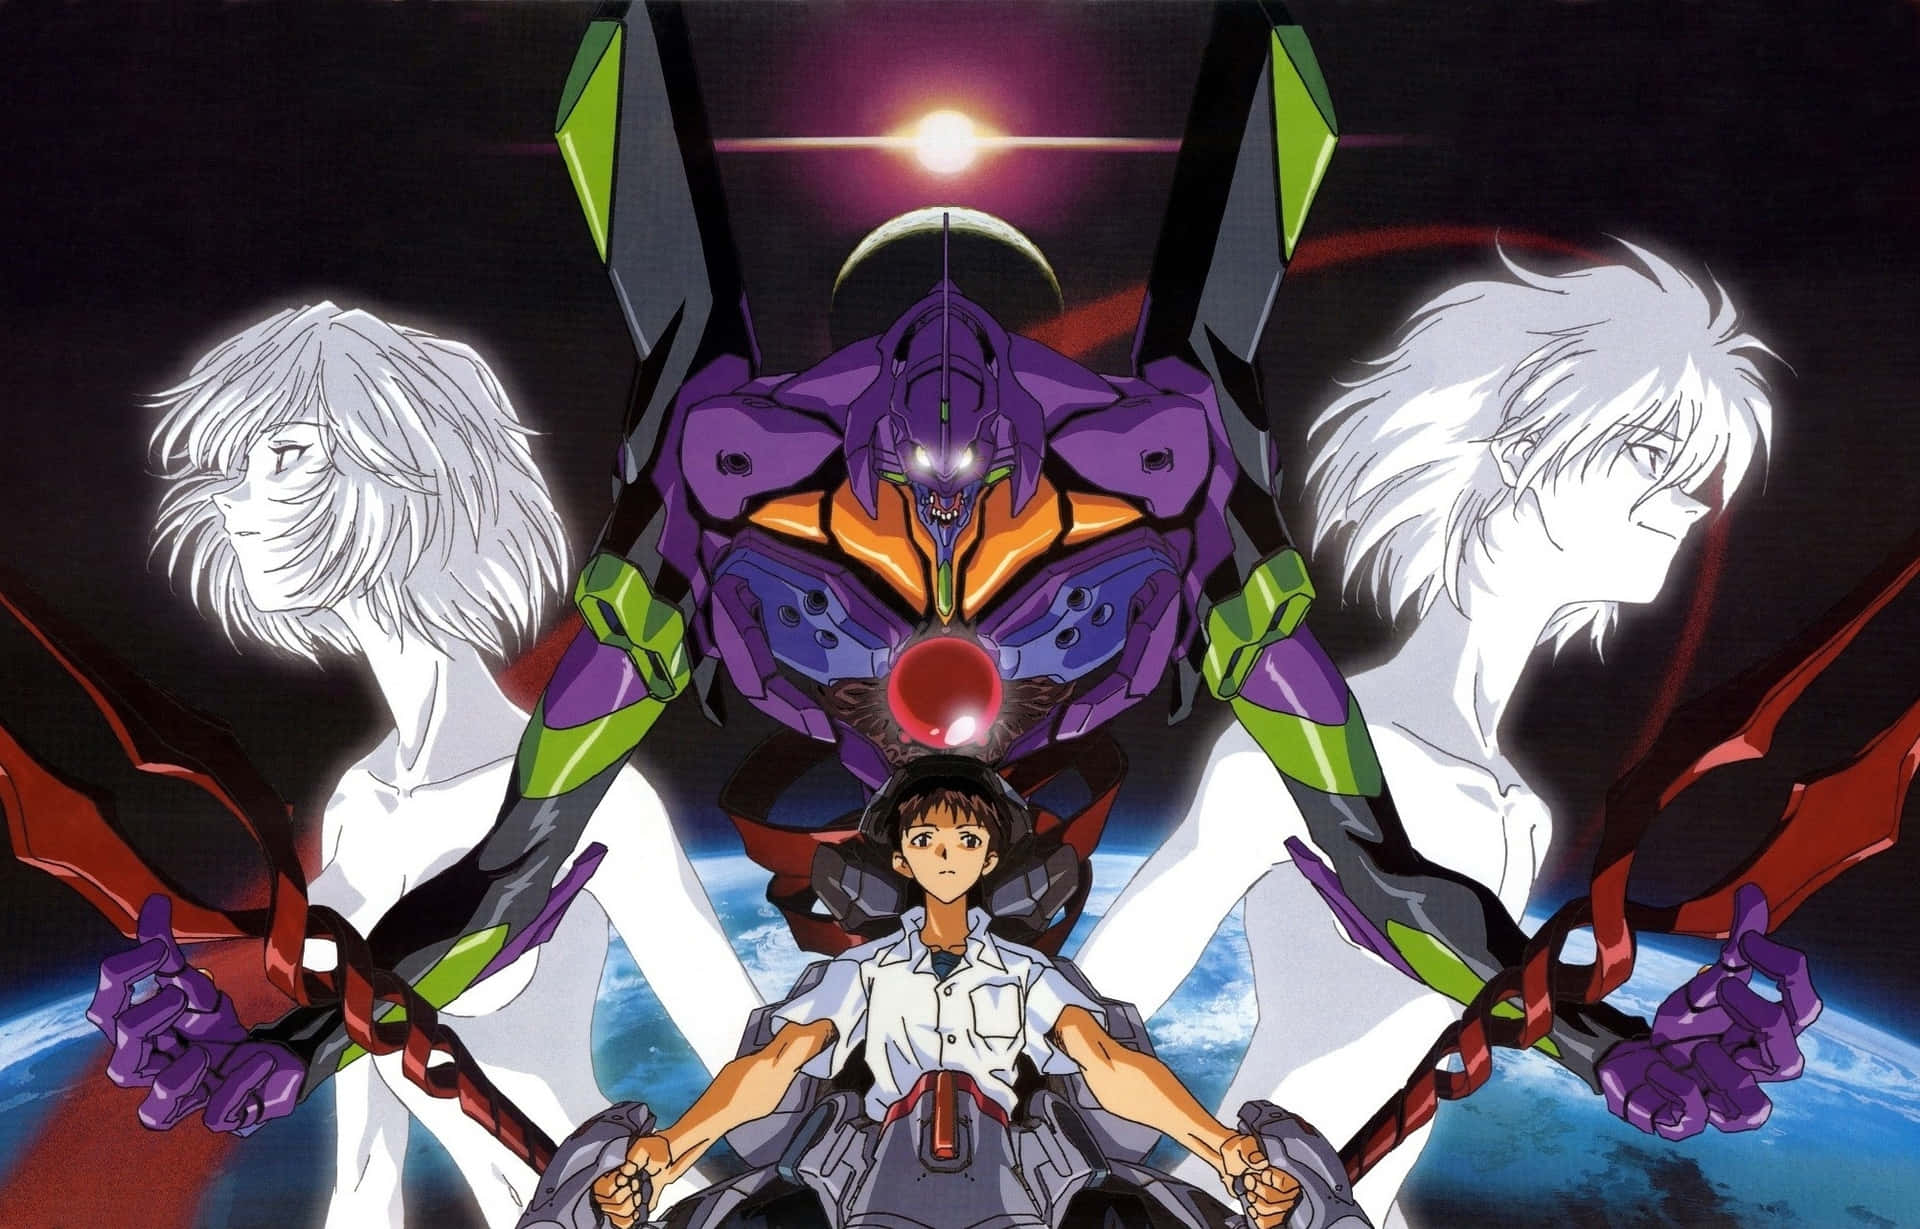 Shinji Ikari and Rei Ayanami of Neon Genesis Evangelion